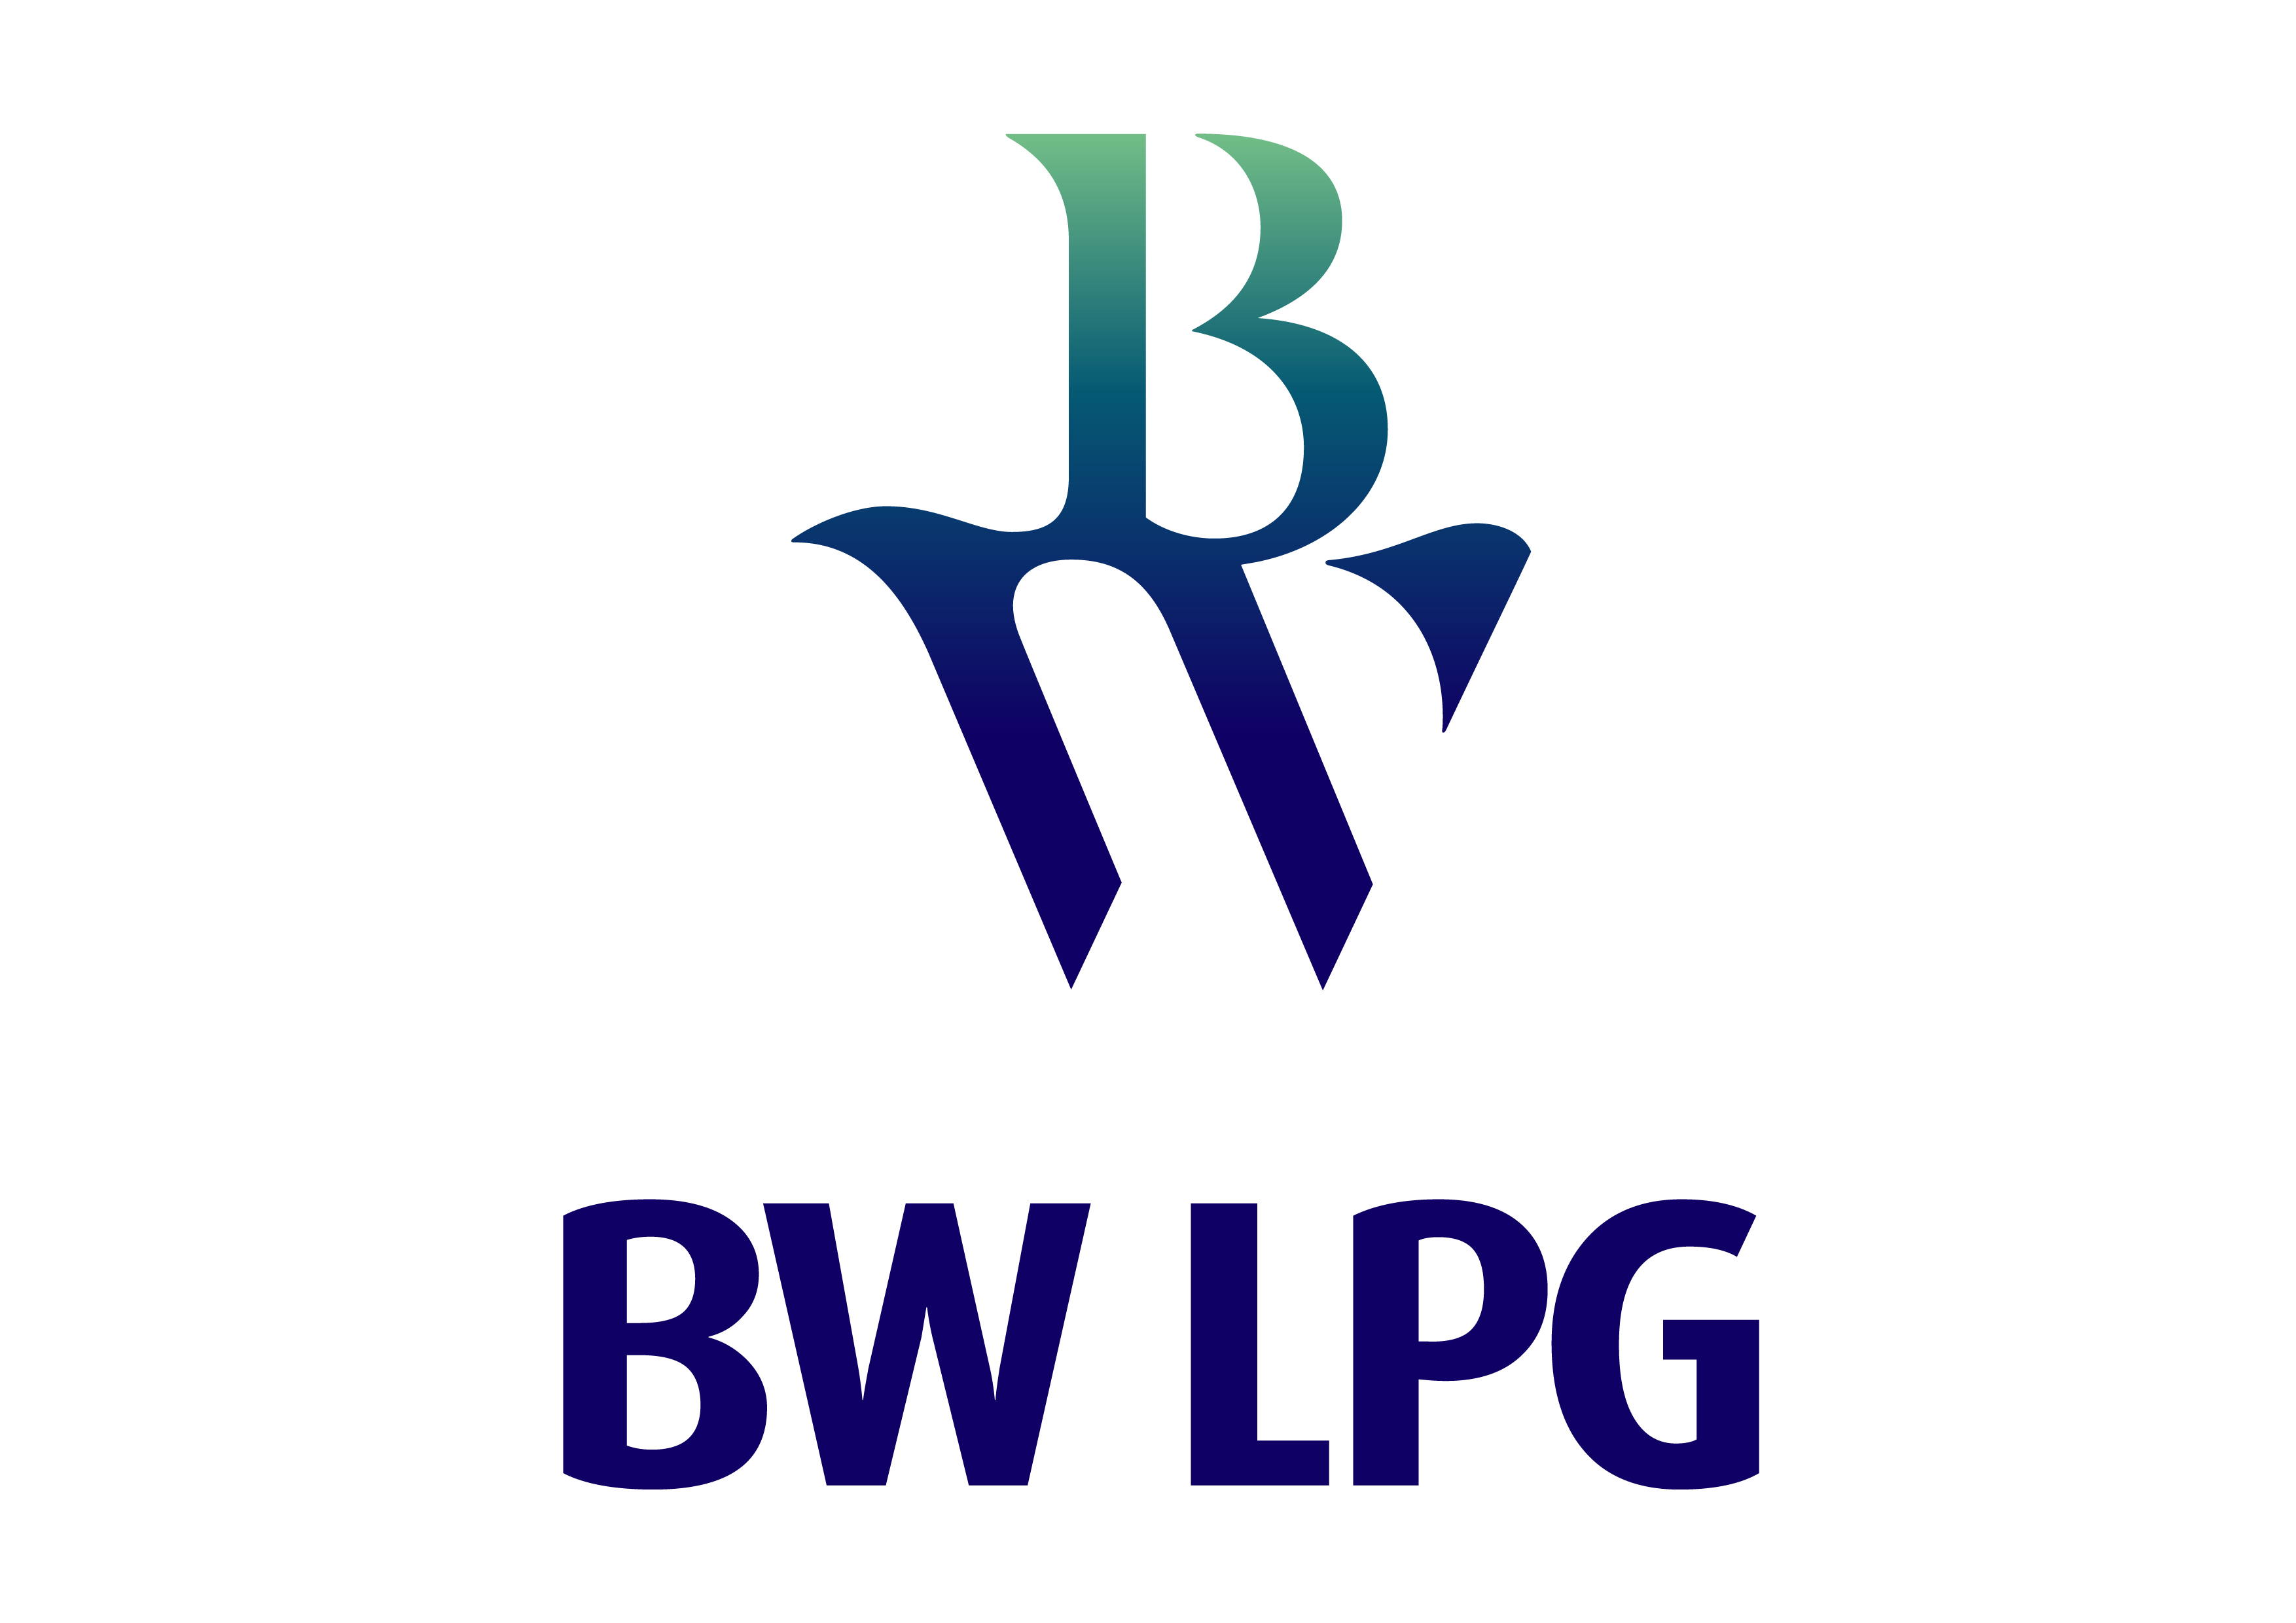 BW LPG Vertical Logo Full Colour  (RGB - for screen)-01.jpg